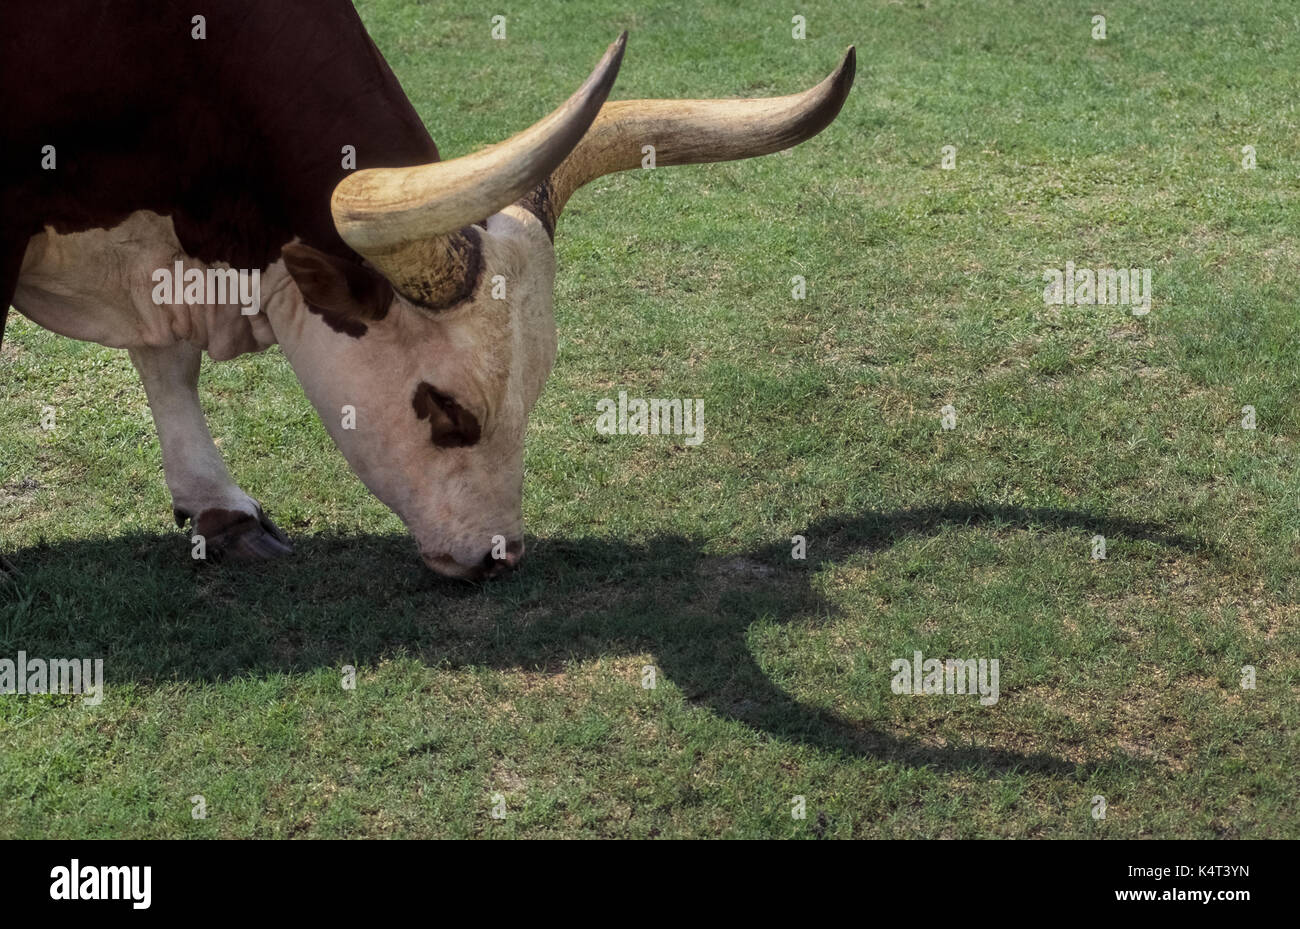 Watusi bovini sono native per l Africa Orientale e noti per le loro grandi e lunghe corna, come visto da un'ombra fatta da questa giovane mucca pascolare in un campo erboso in Florida, Stati Uniti d'America. Considerata una delle più antiche razze di bovini, Watusi sono note anche come il bestiame dei Re, Ankole bestiame e Royal Ox. Foto Stock